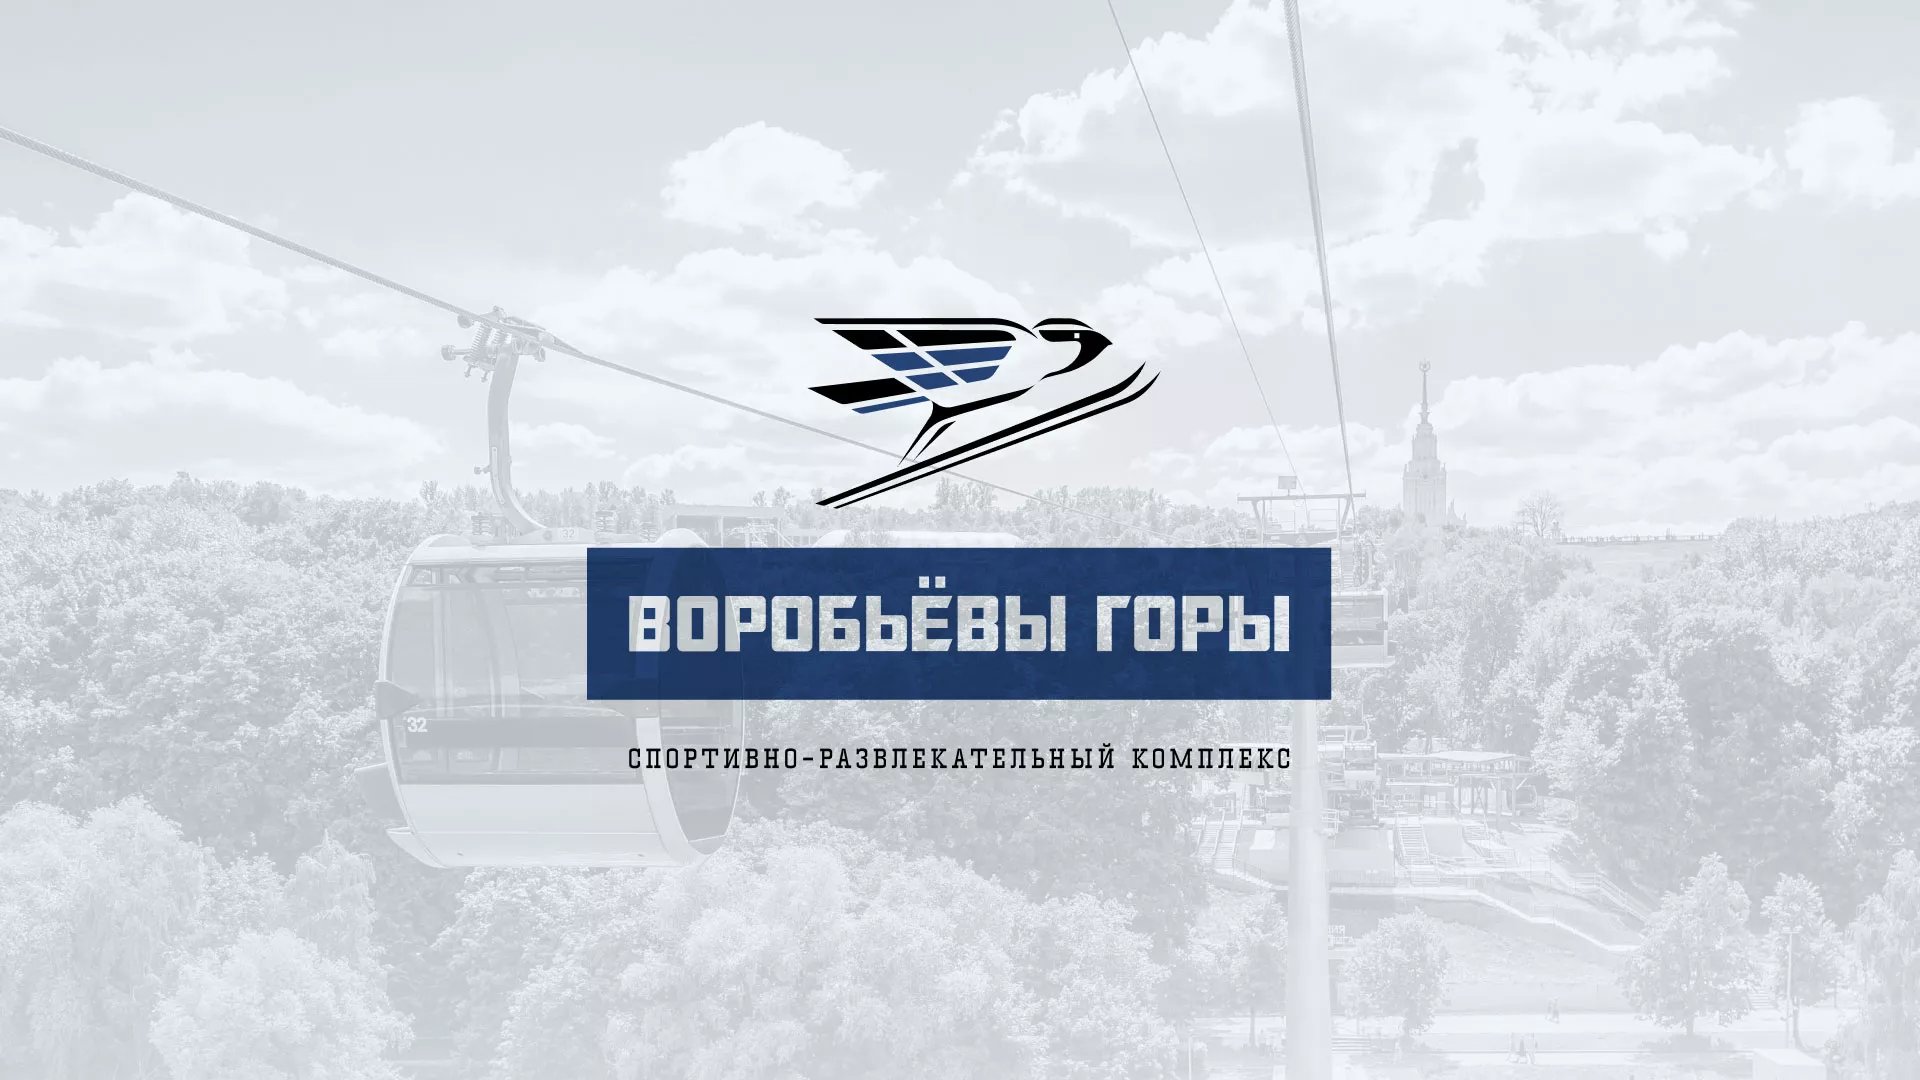 Разработка сайта в Мурманске для спортивно-развлекательного комплекса «Воробьёвы горы»